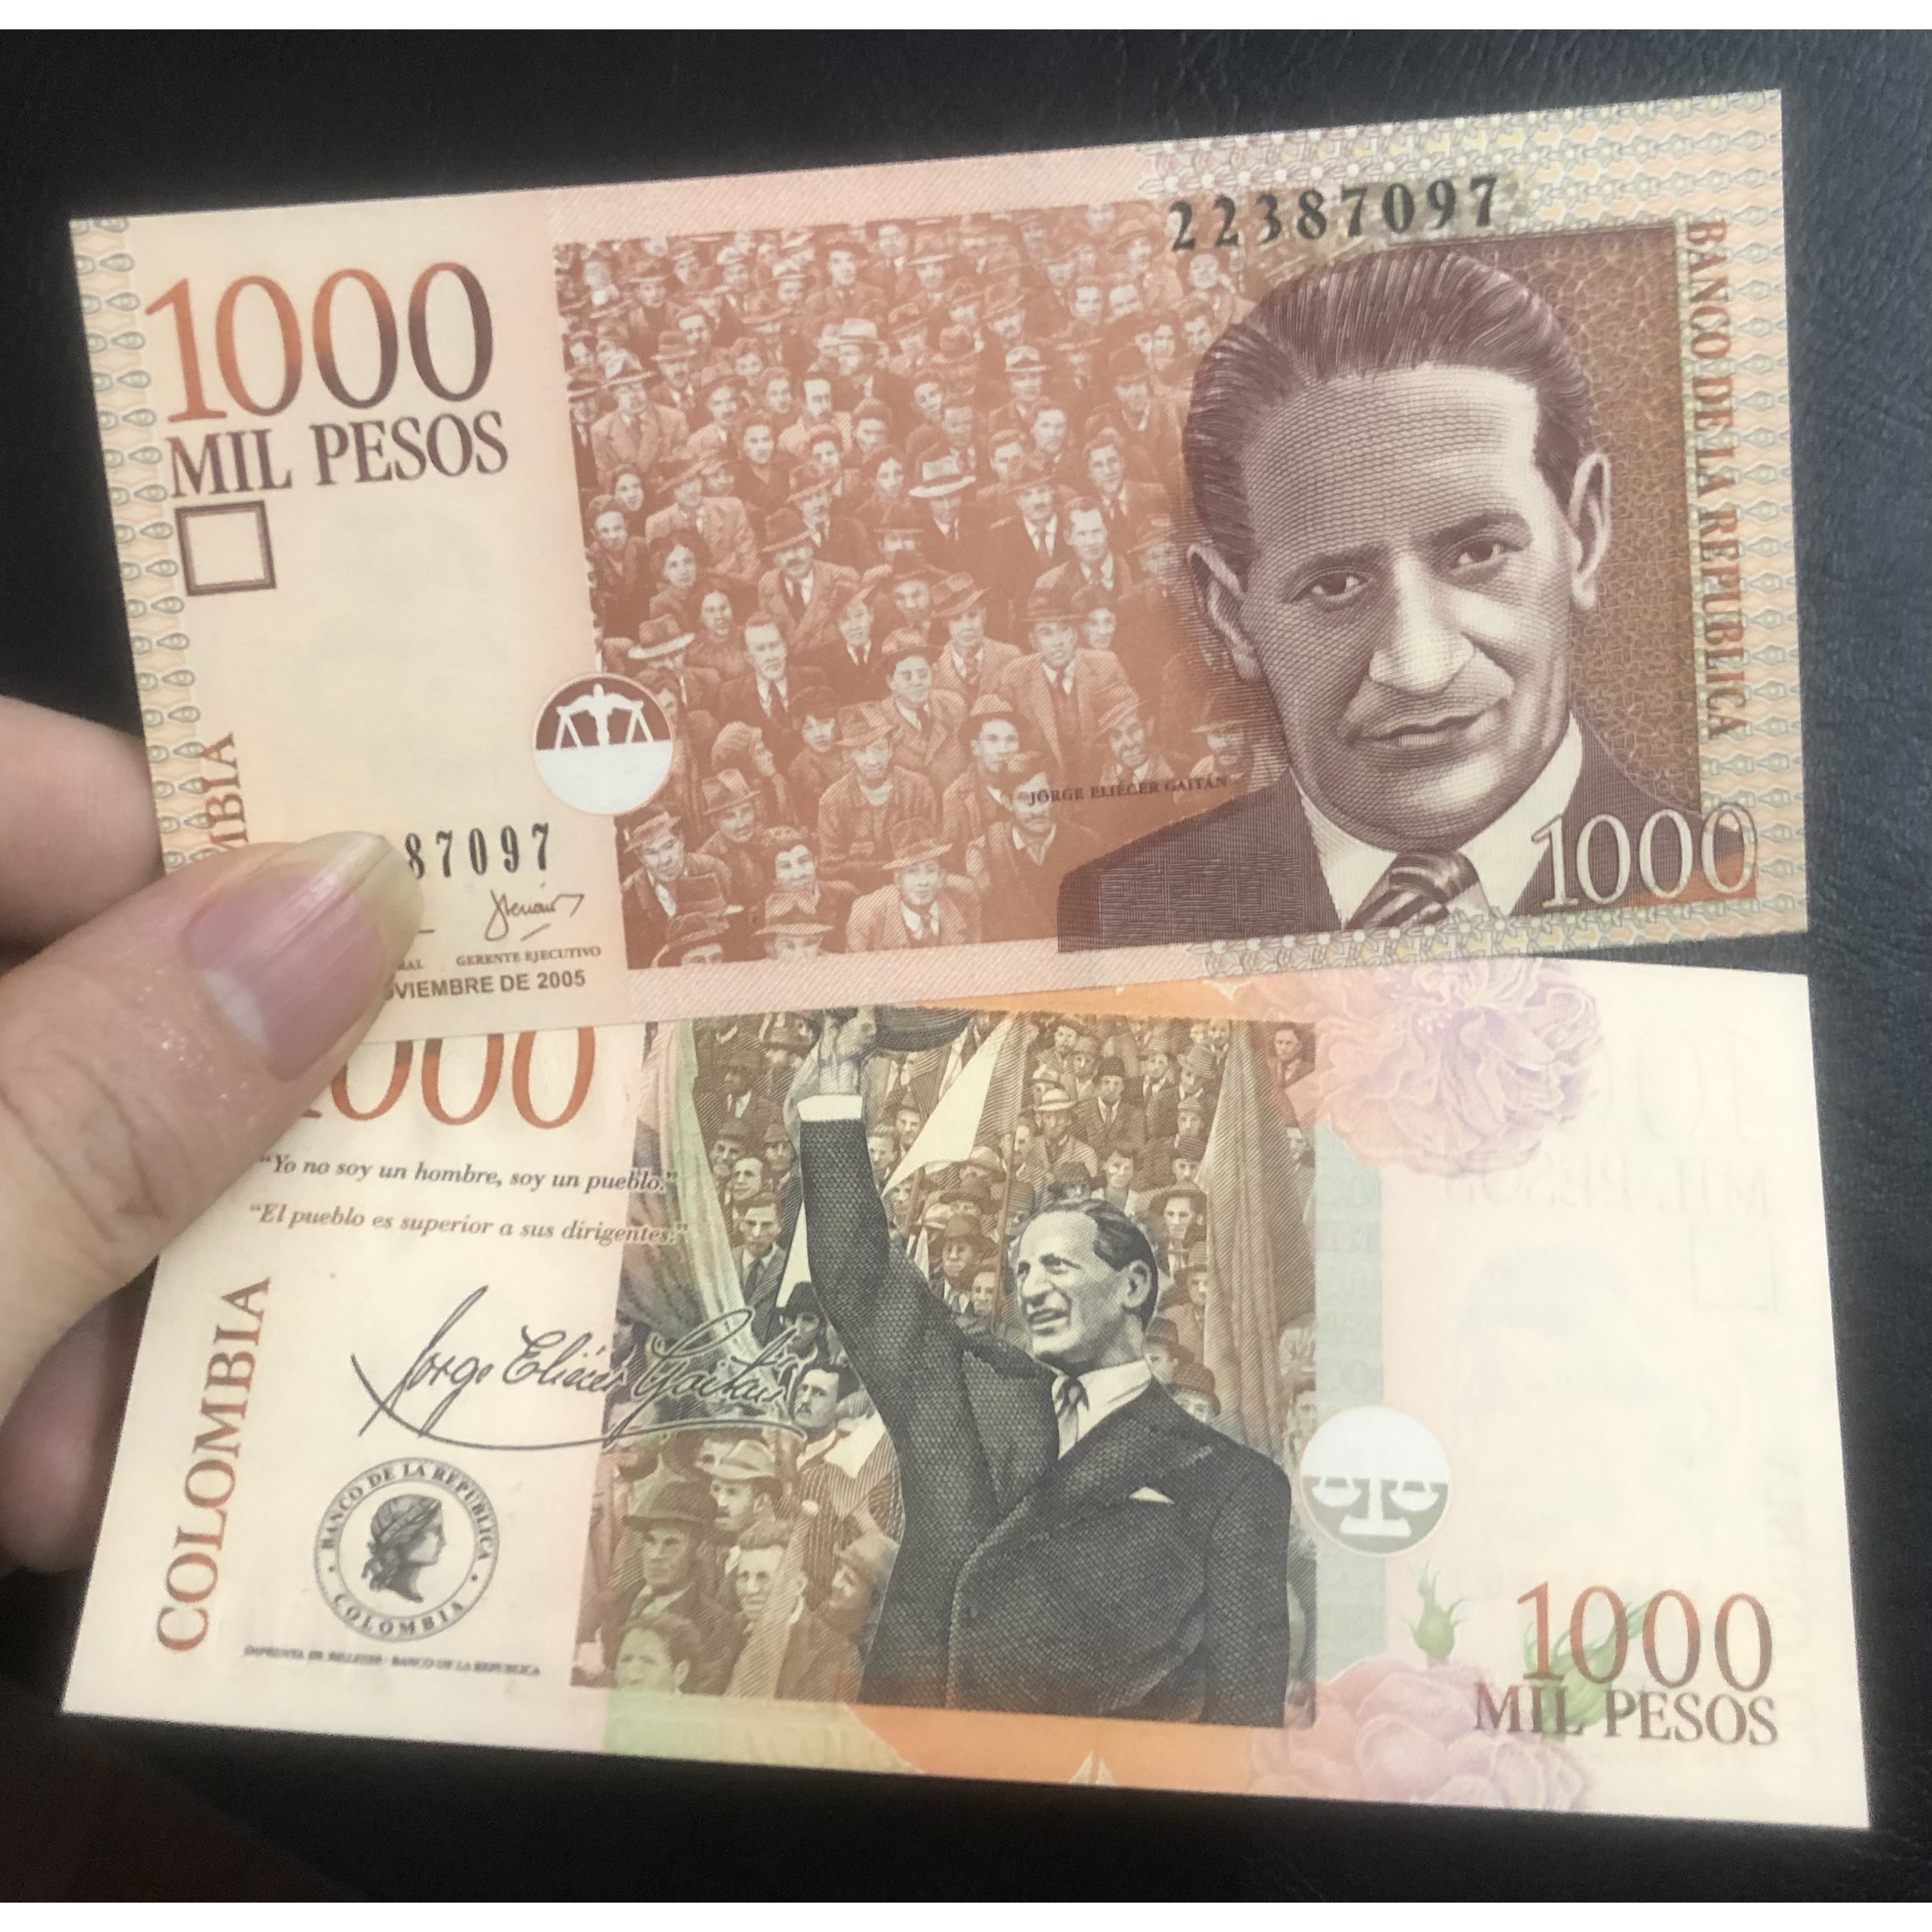 Tiền châu Mỹ, Cô-lôm-bi-a 1000 Pesos sưu tầm, tặng kèm bao nilong bảo quản